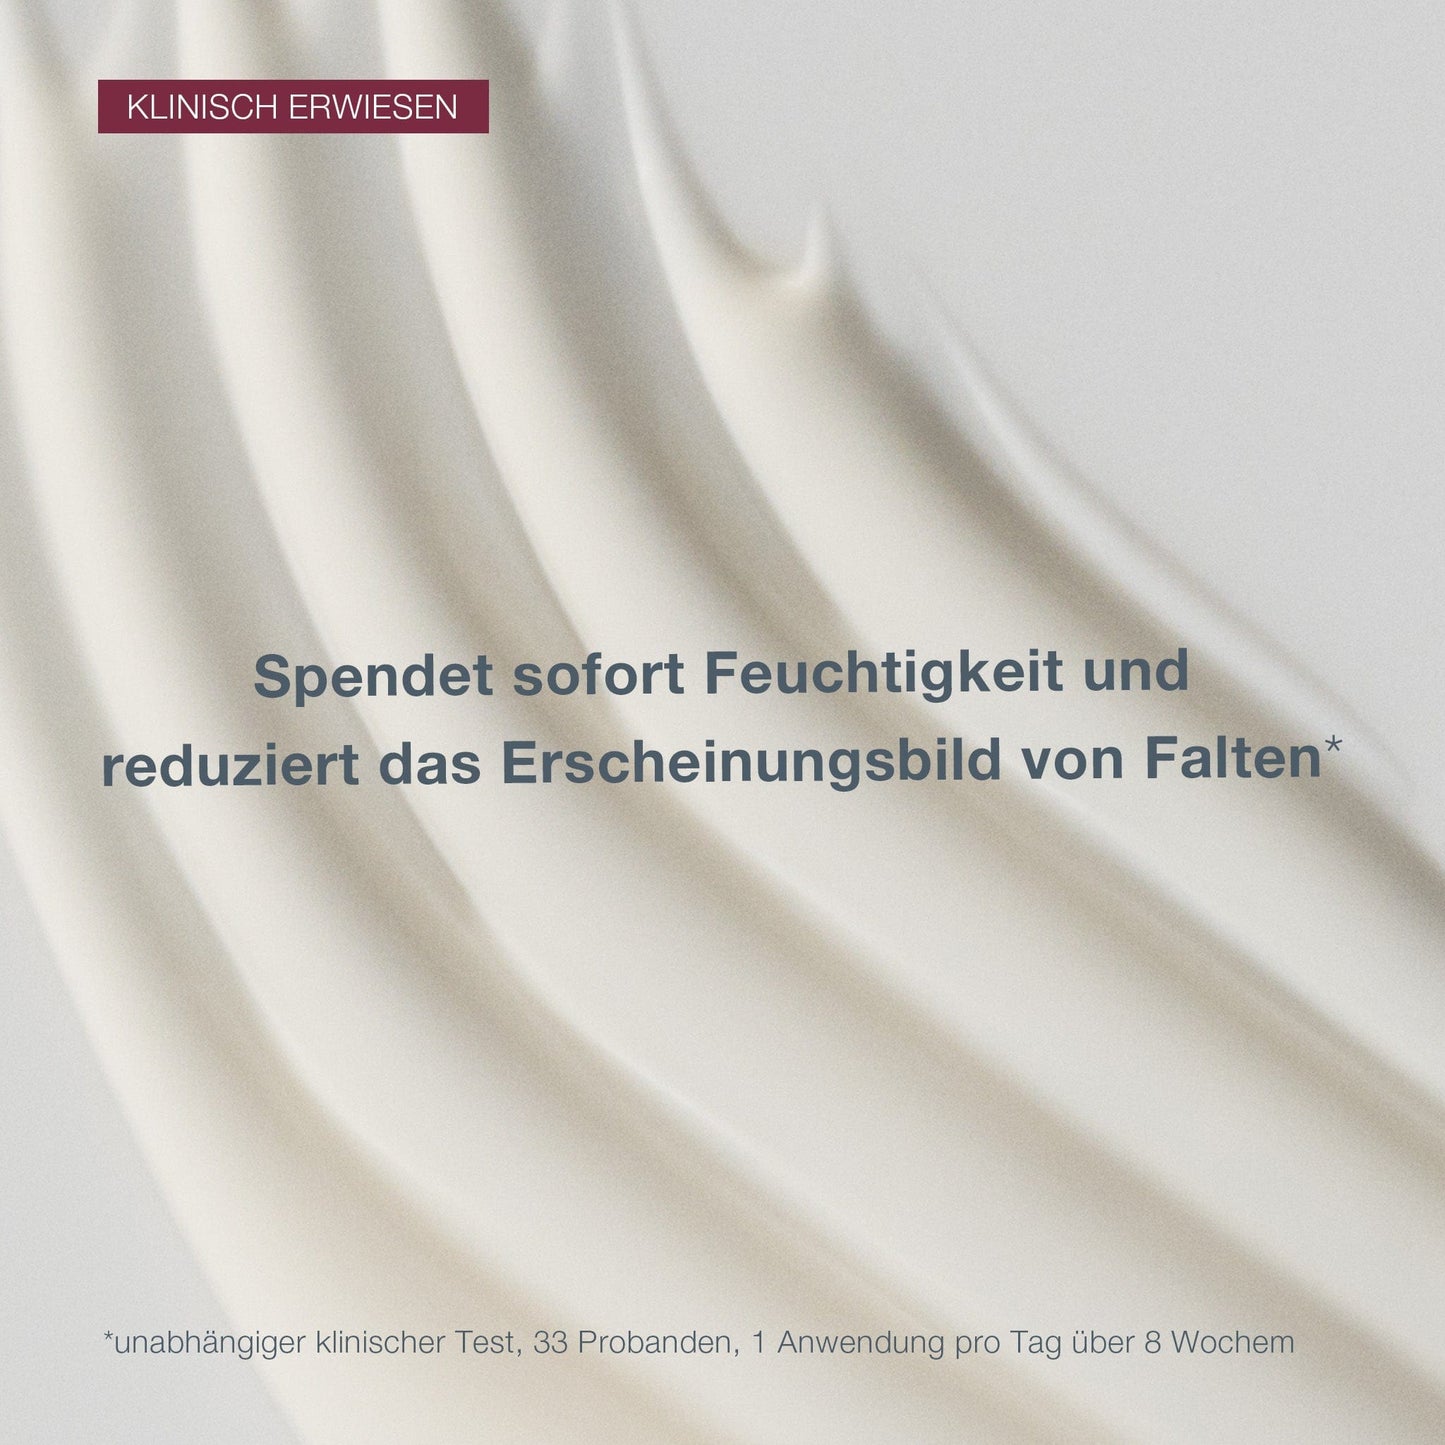 Nahaufnahme einer glatten, weißen Dynamic Skin Recovery SPF50-Creme mit einem Text auf Deutsch, der ihre klinisch nachgewiesene feuchtigkeitsspendende und faltenreduzierende Wirkung anpreist.